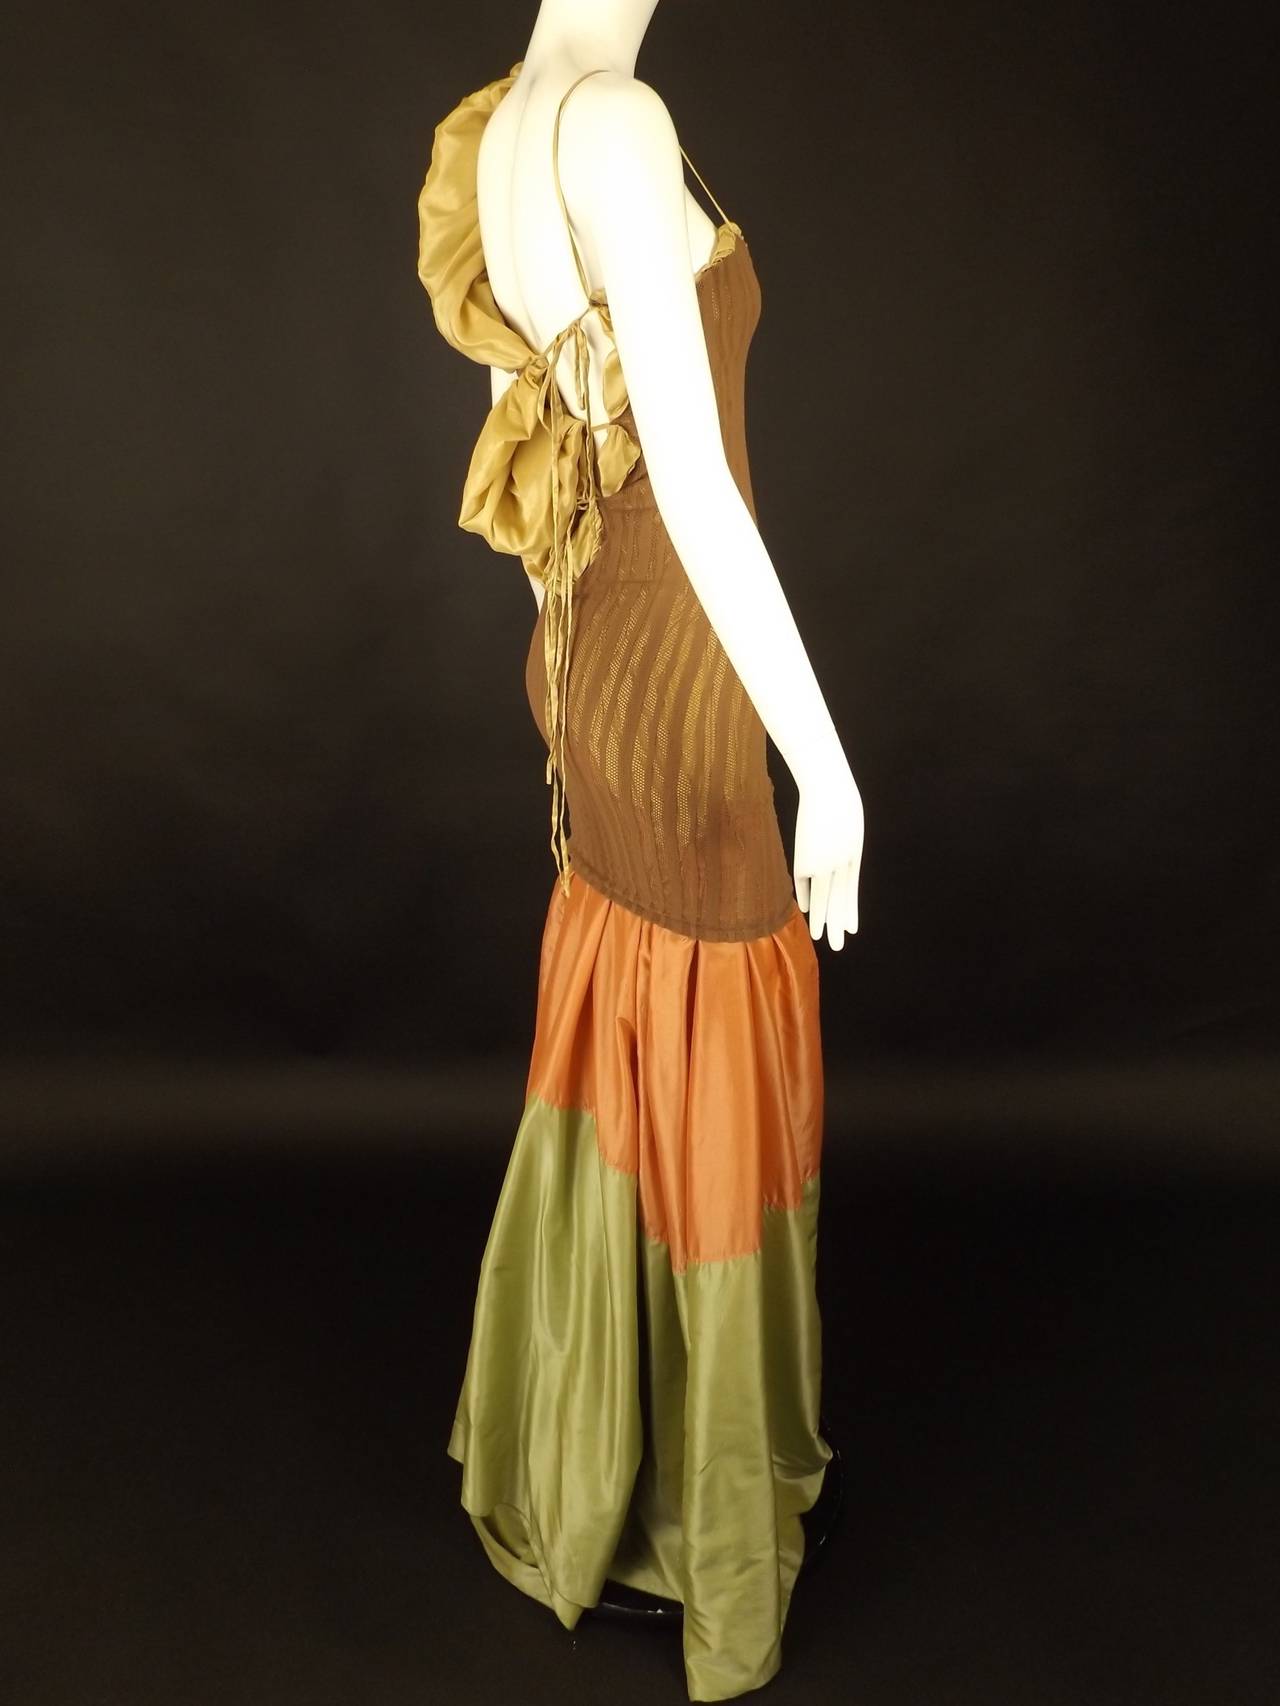 Women's 2001 Knit & Silk Jean Paul Gaultier Evening Dress For Sale